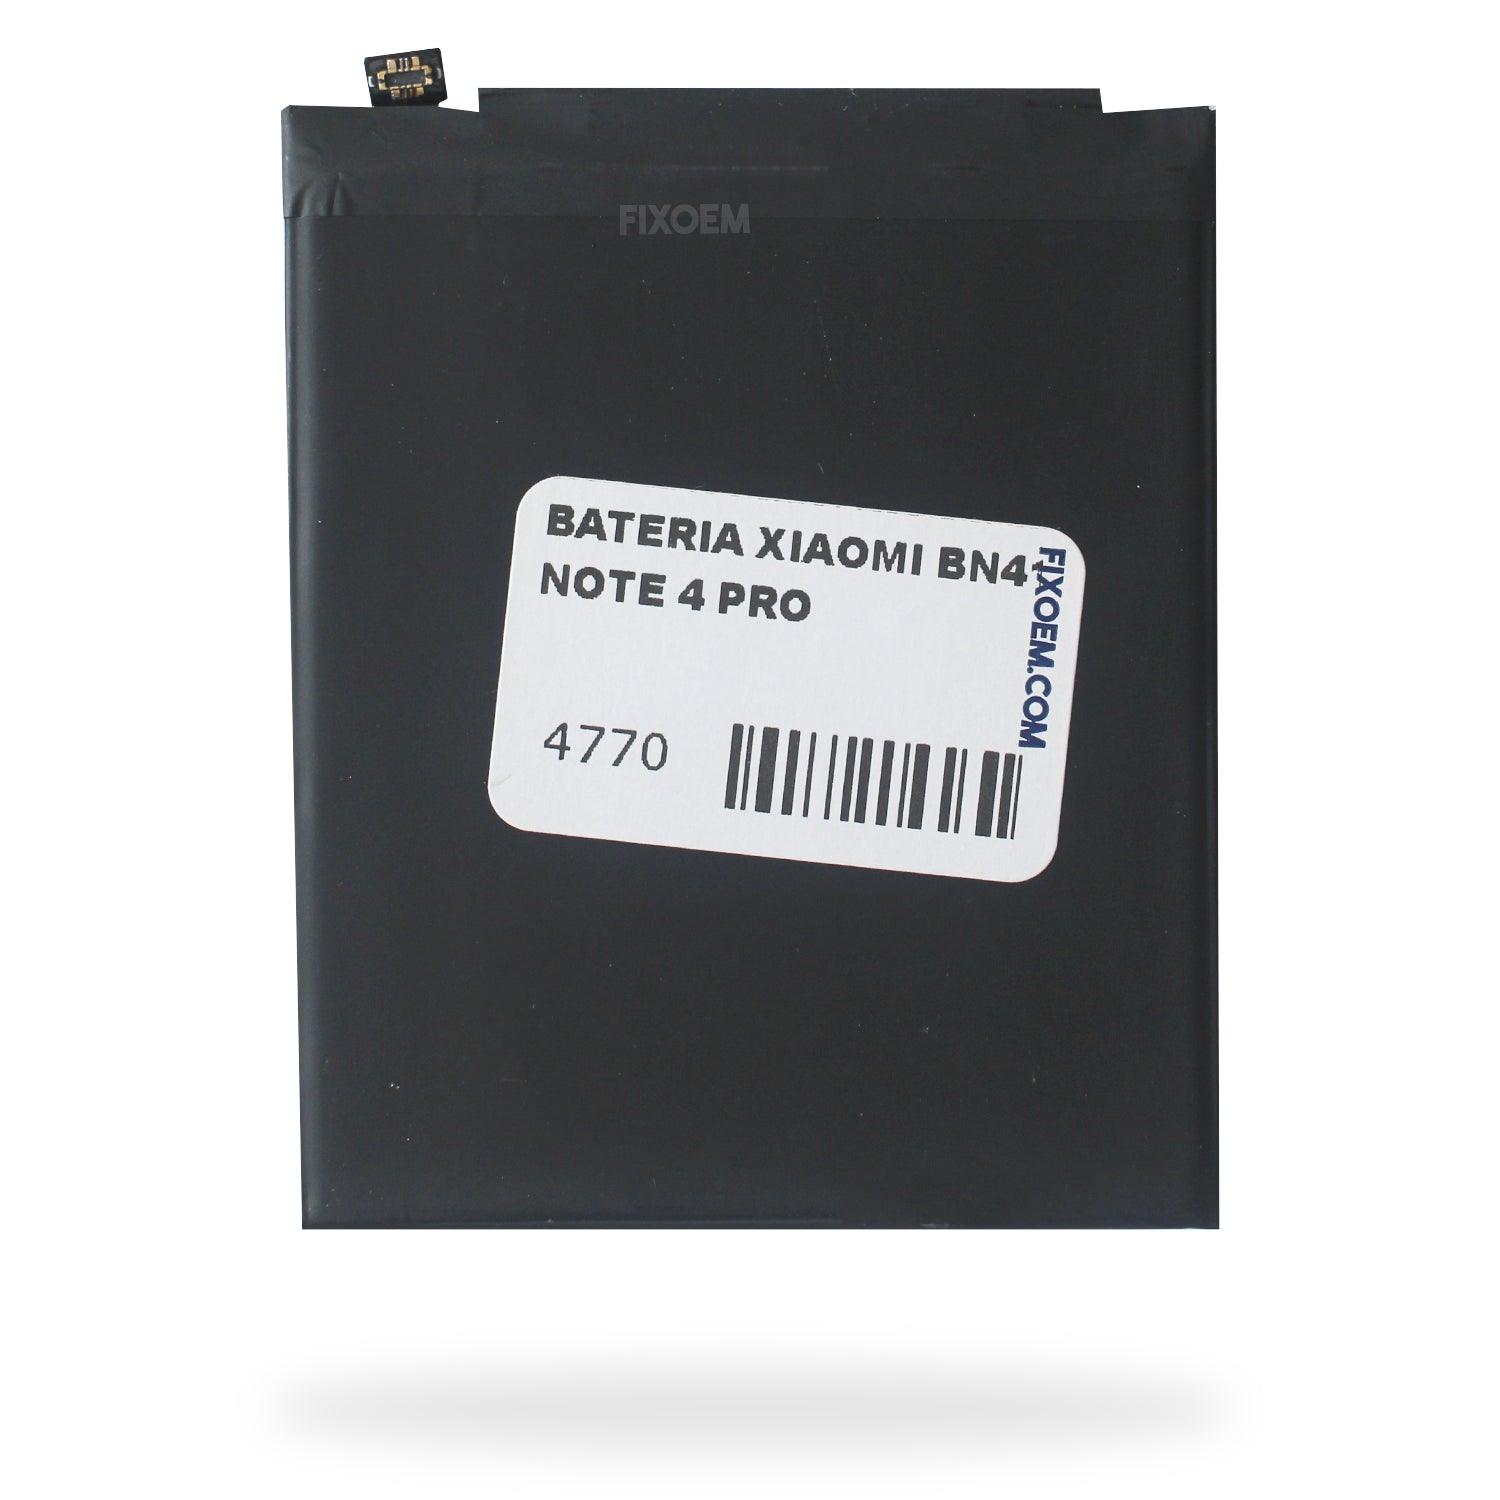 Bateria Xiaomi Note 4 Pro Bn41 a solo $ 160.00 Refaccion y puestos celulares, refurbish y microelectronica.- FixOEM